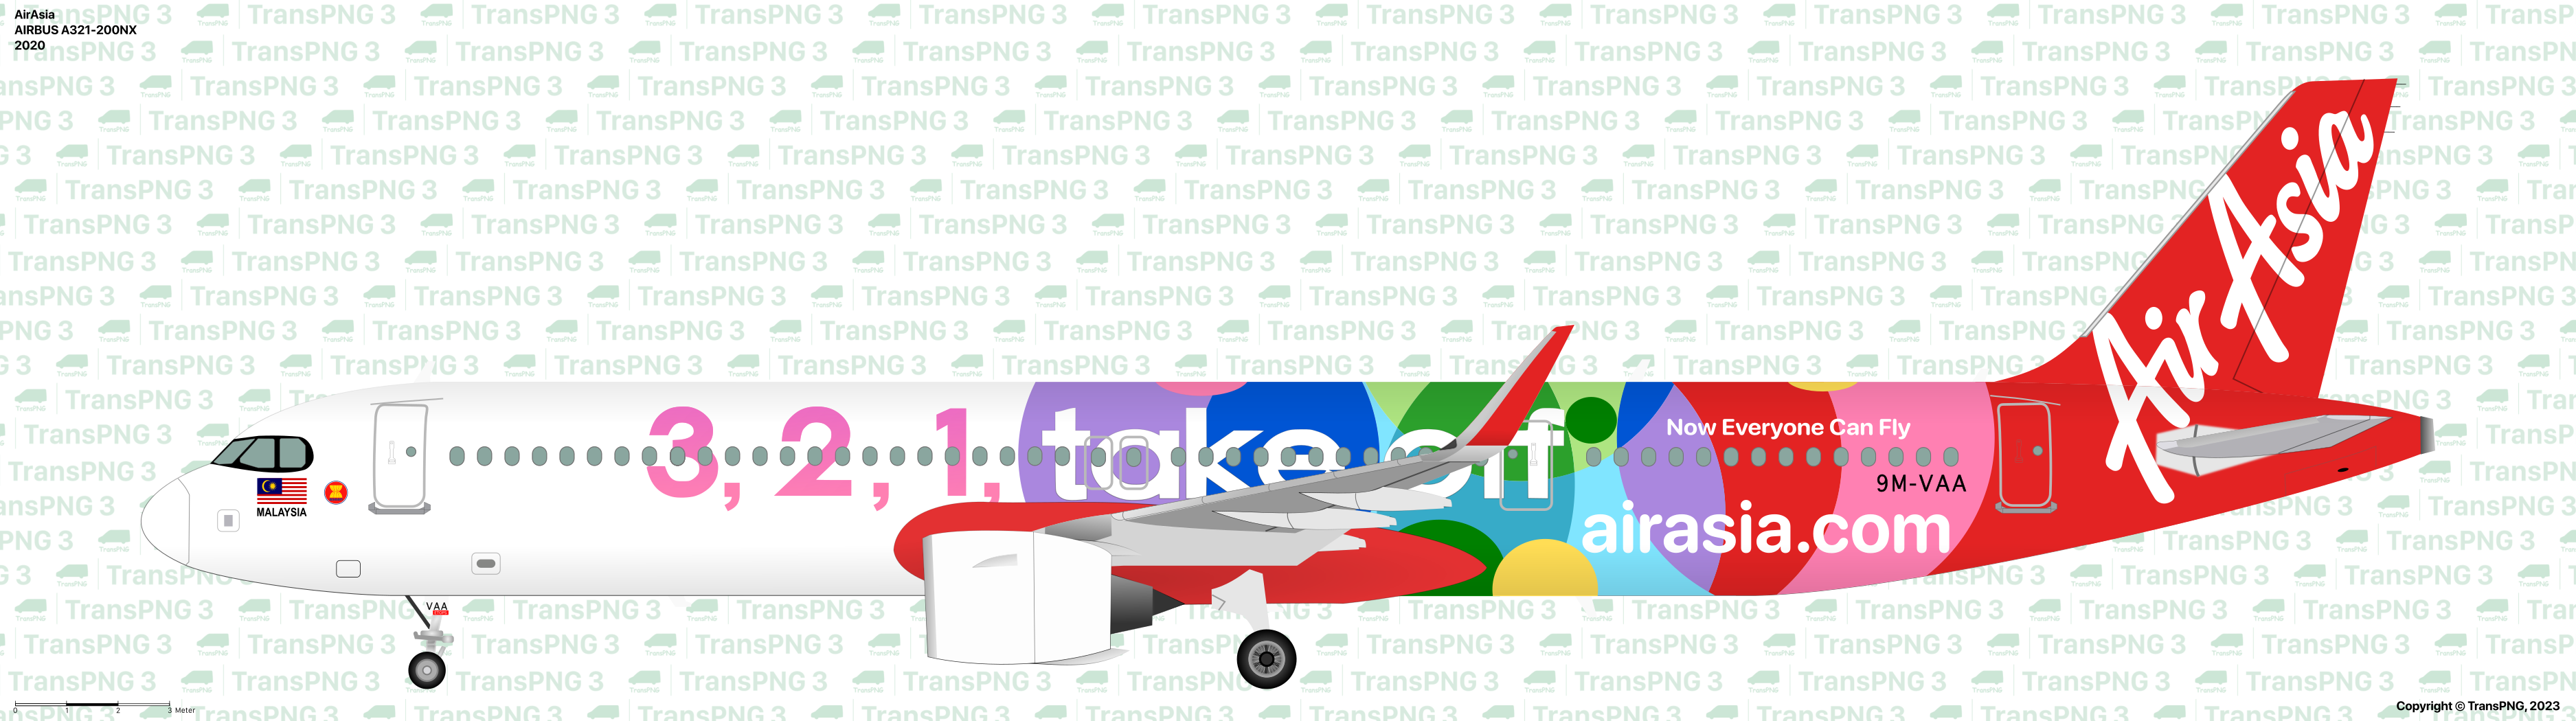 TransPNG.net | 分享世界各地多種交通工具的優秀繪圖 - 客機 53144030971_891516e282_o